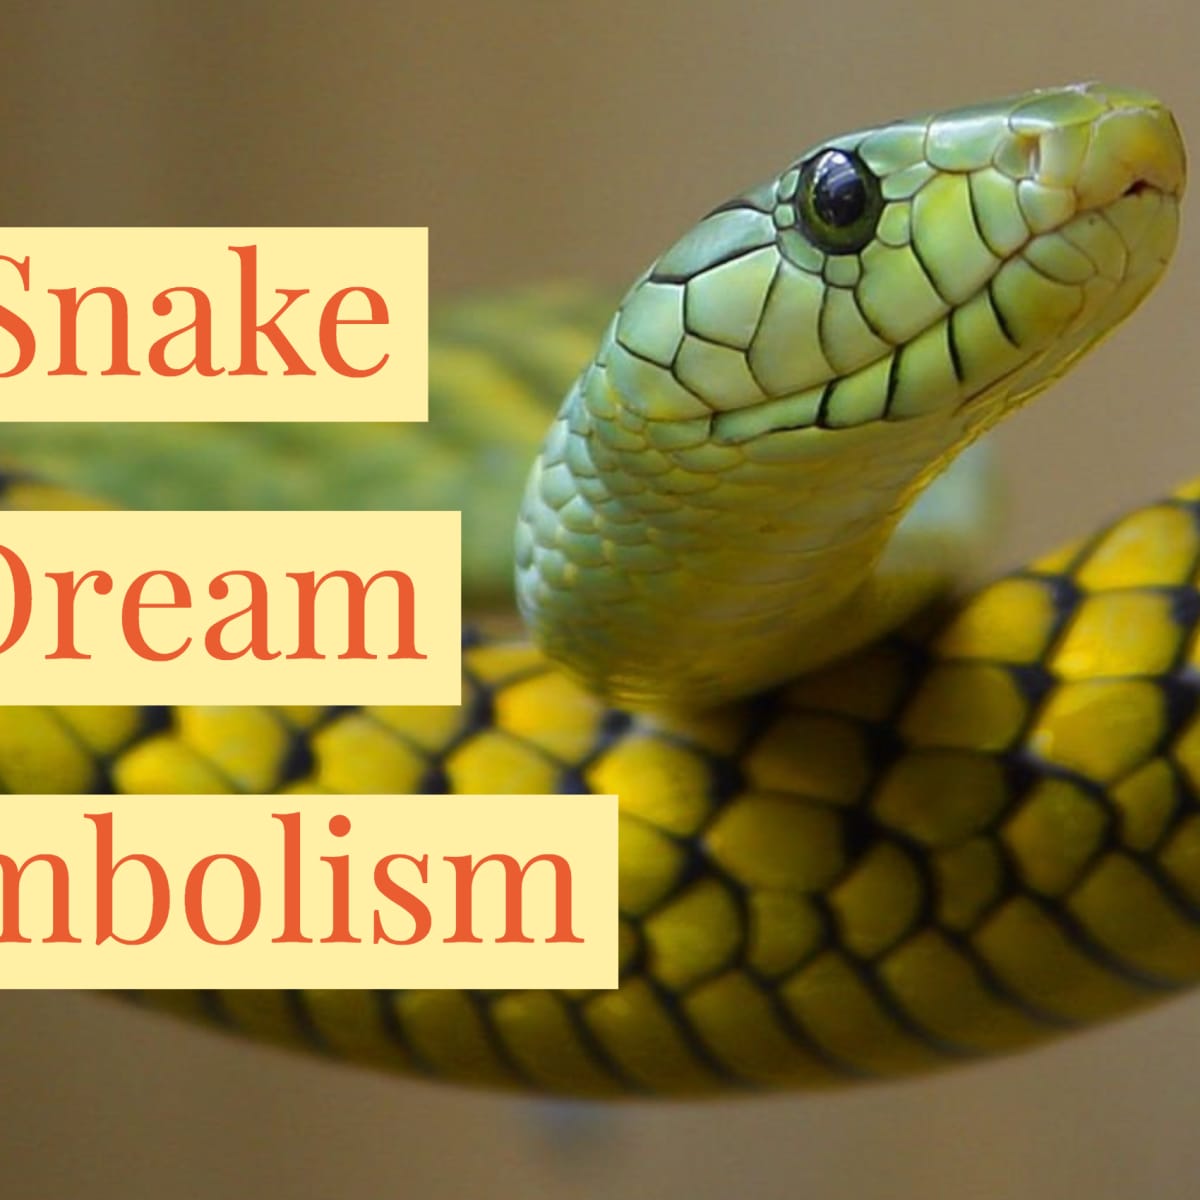 Snake Leg Dream Meaning 